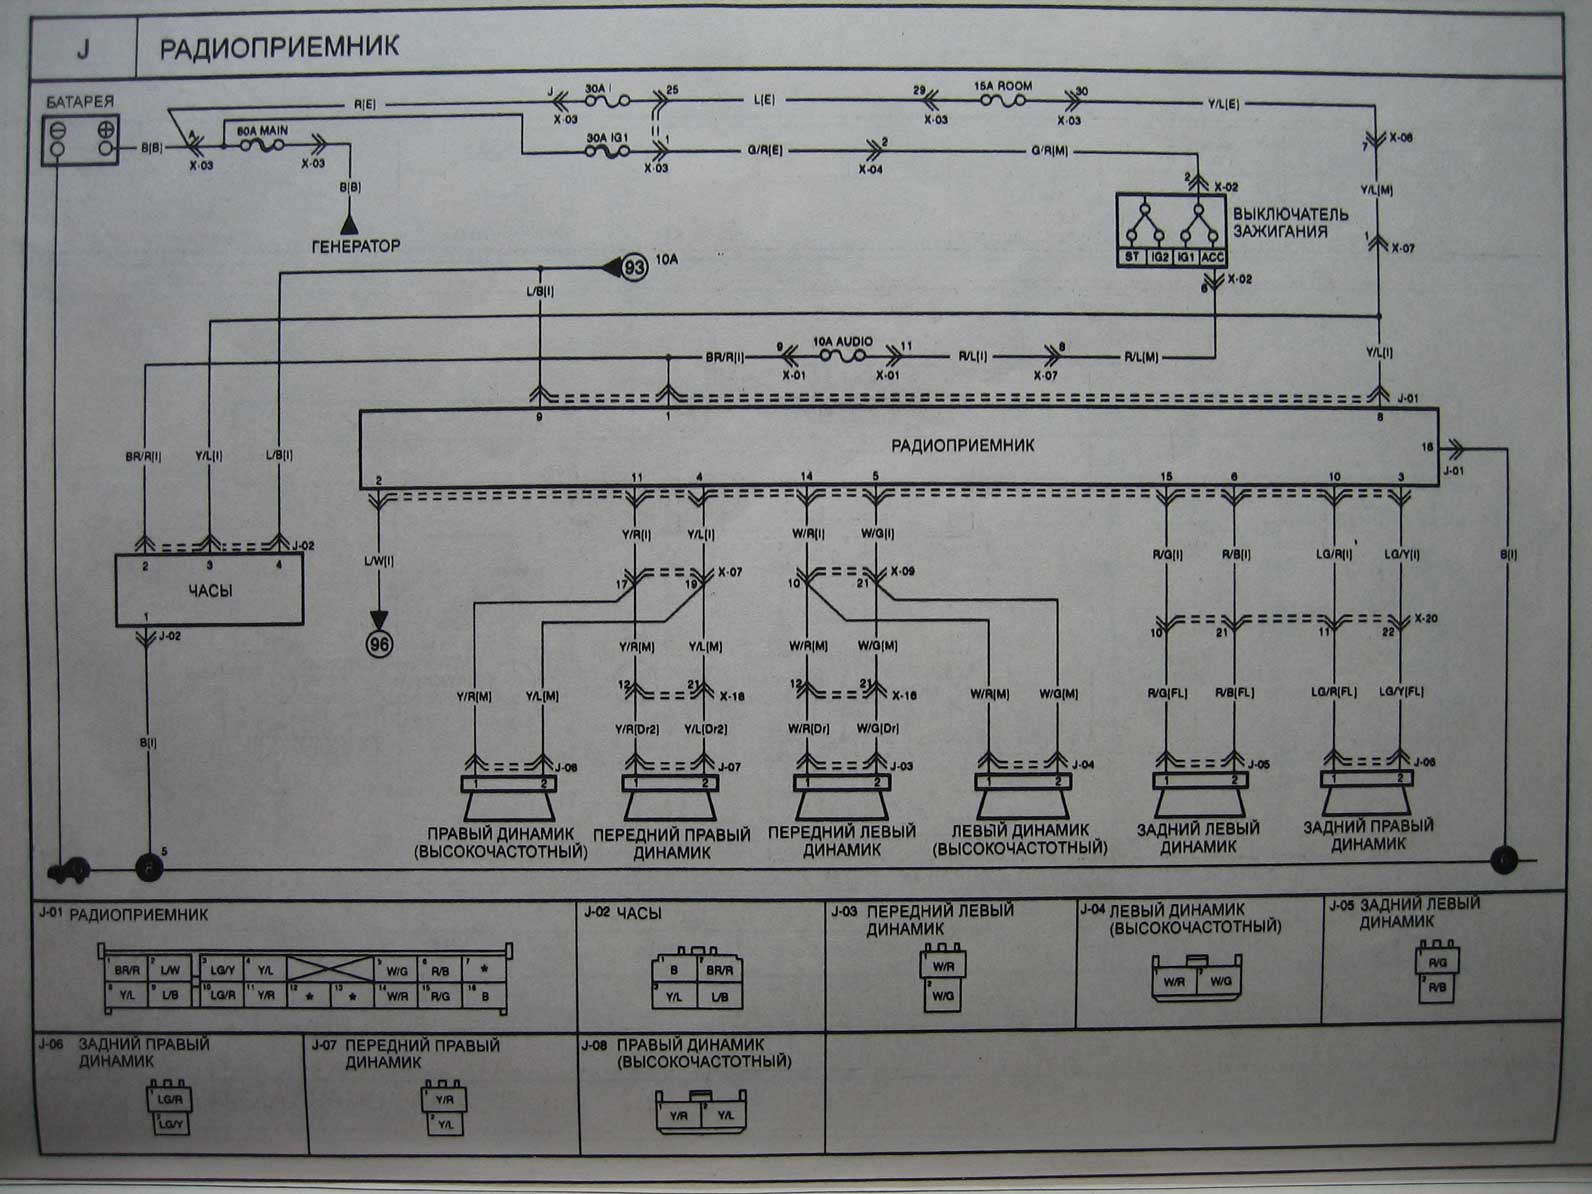 Распиновка киа рио 3. Коммутатор управления скорости Киа Рио 4. Пины в разъем для магнитолы Киа Рио 3. Разъем магнитолы Киа Рио 3. Схема питания приёмника Kia Rio.